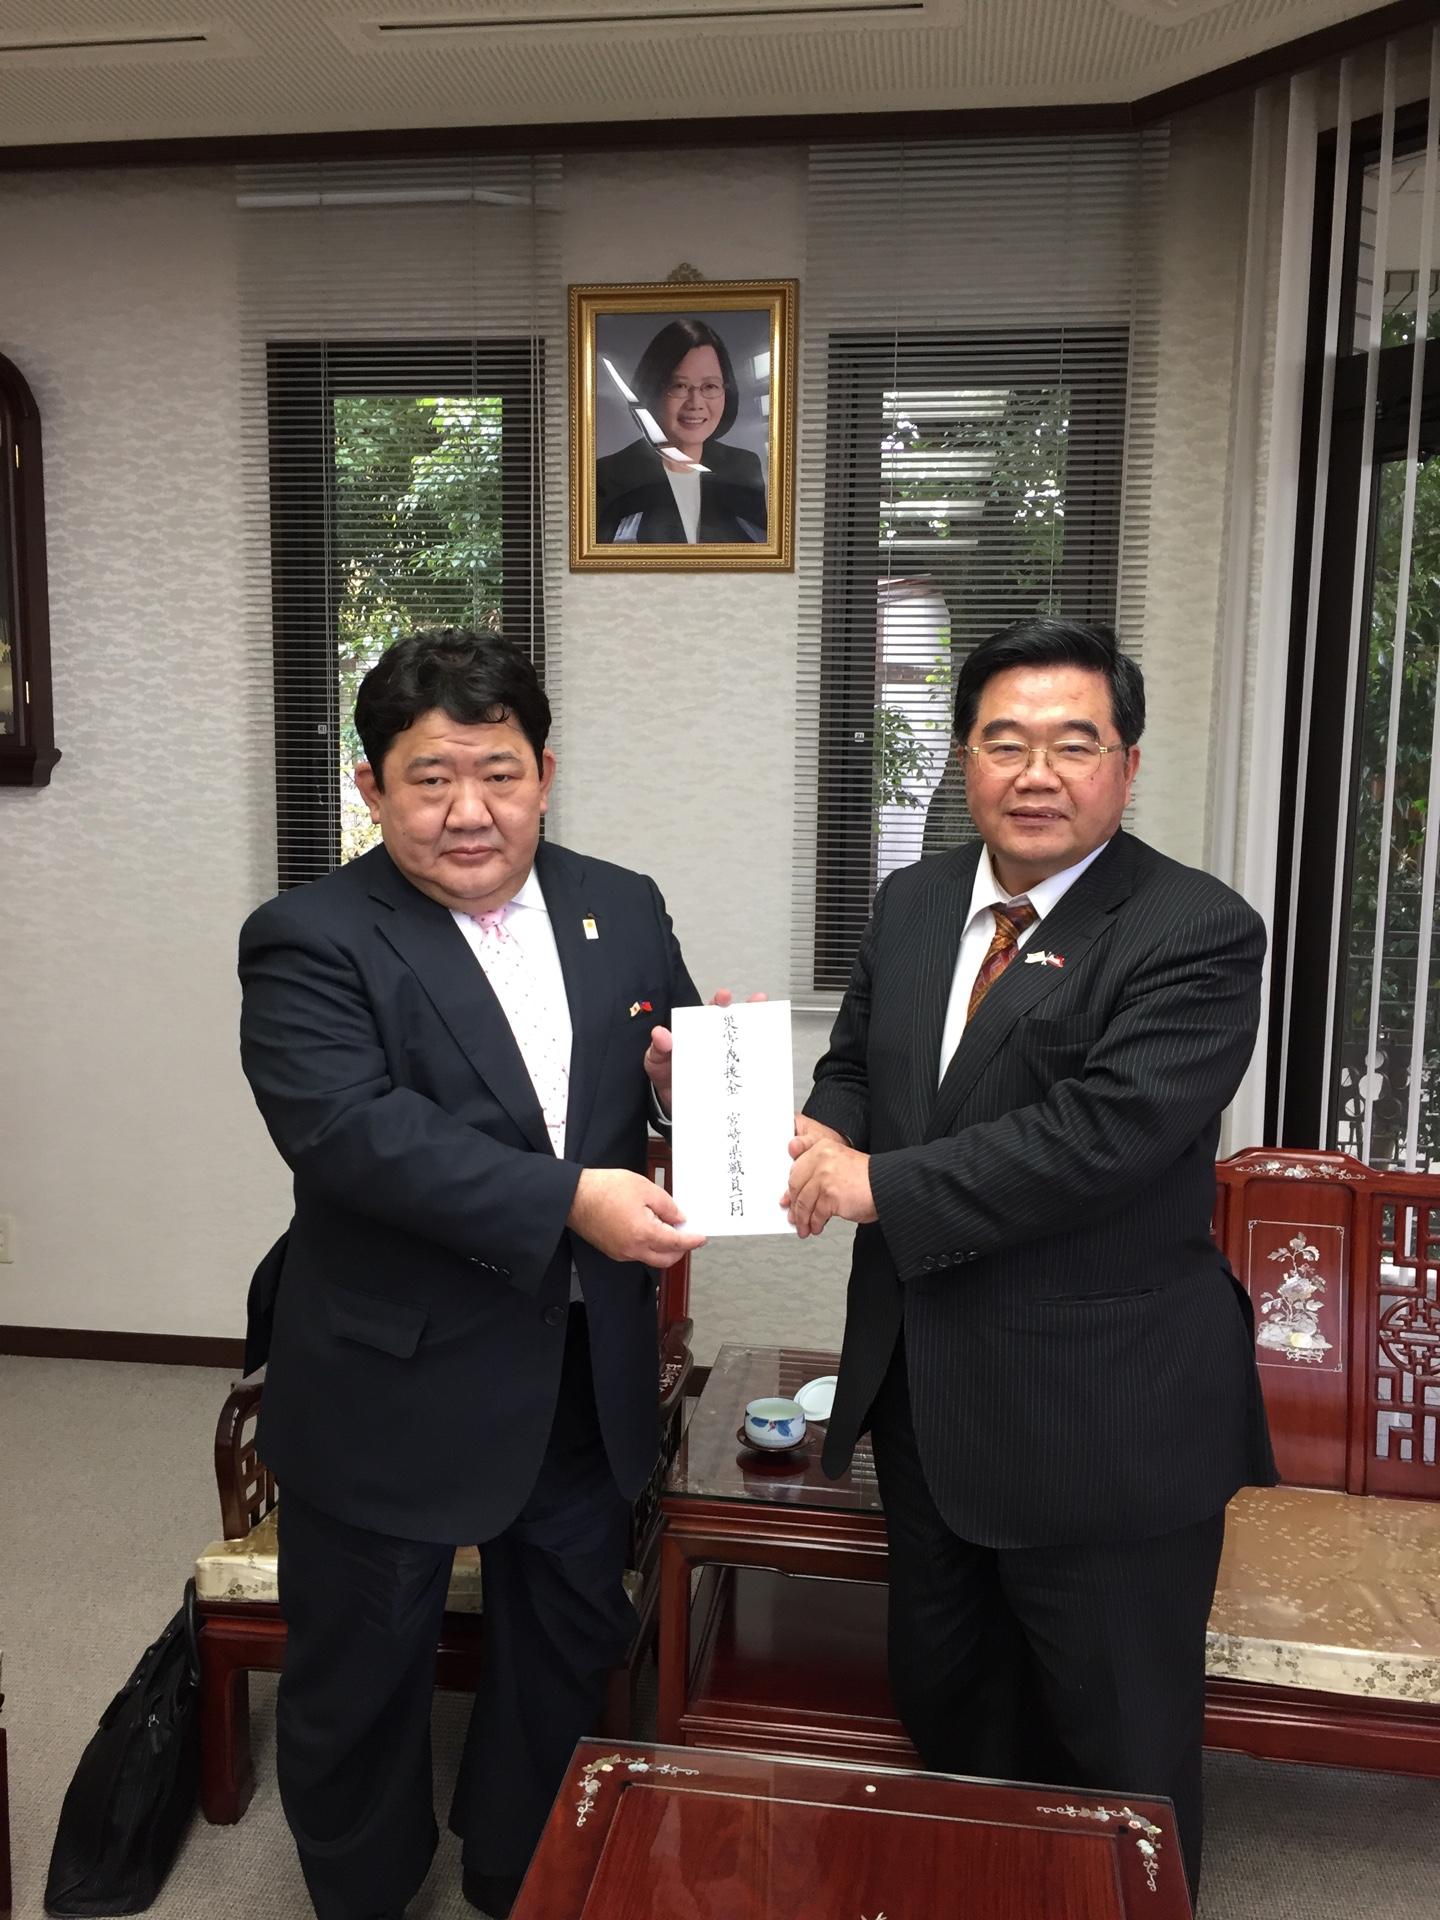 3月19日、宮崎県福岡事務所川端輝治所長が戎総領事を表敬訪問し、花蓮地震に慰問の意を表明した。